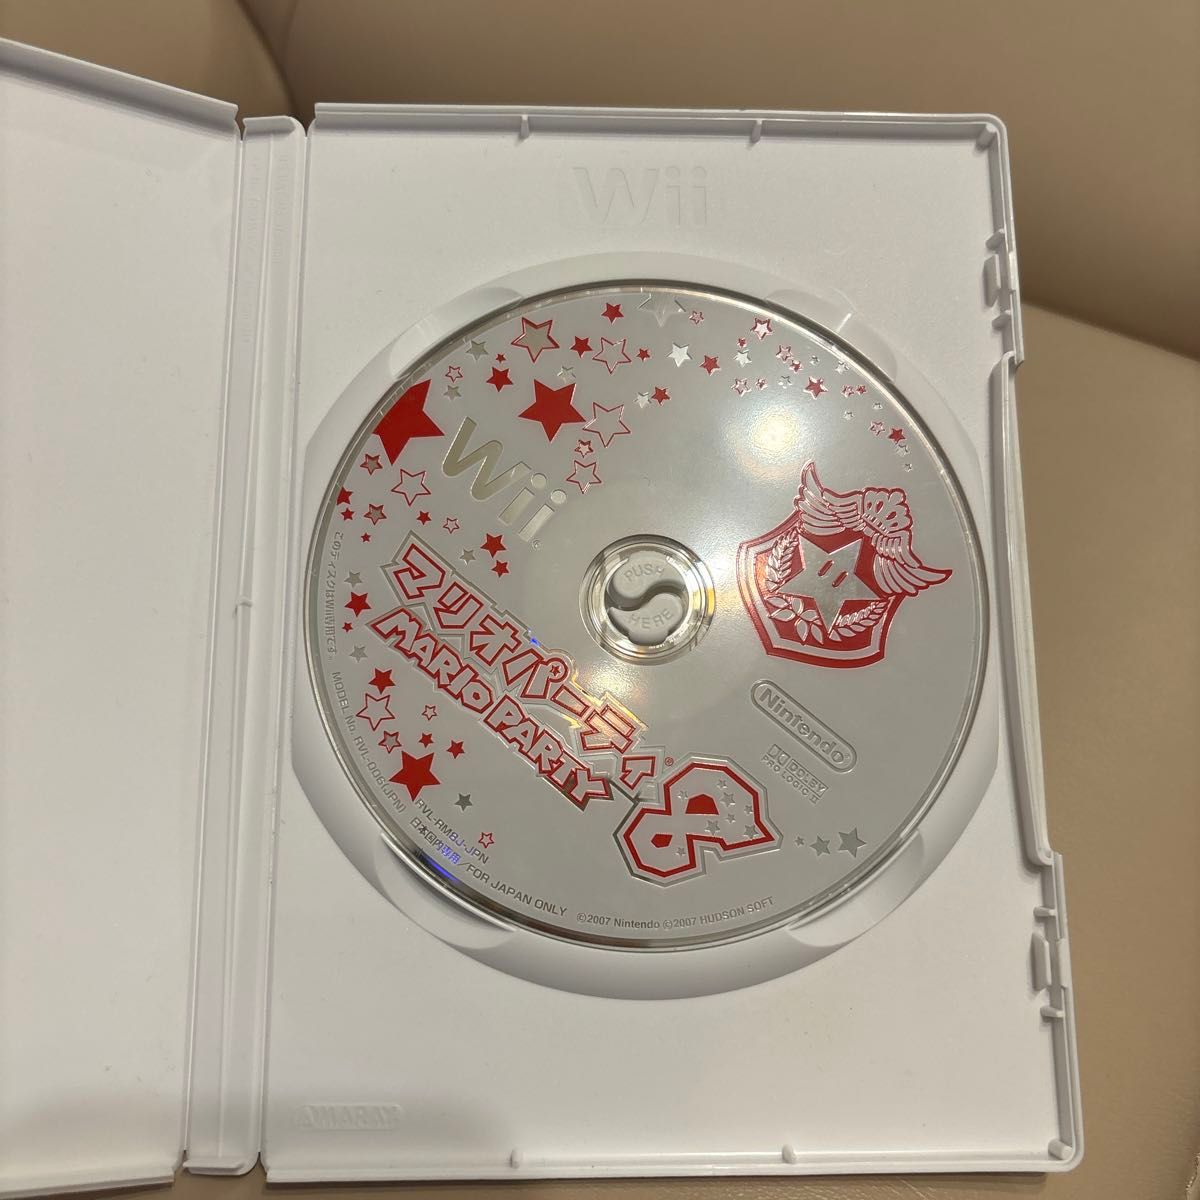 Wii マリオパーティ8 ゲームソフト 任天堂